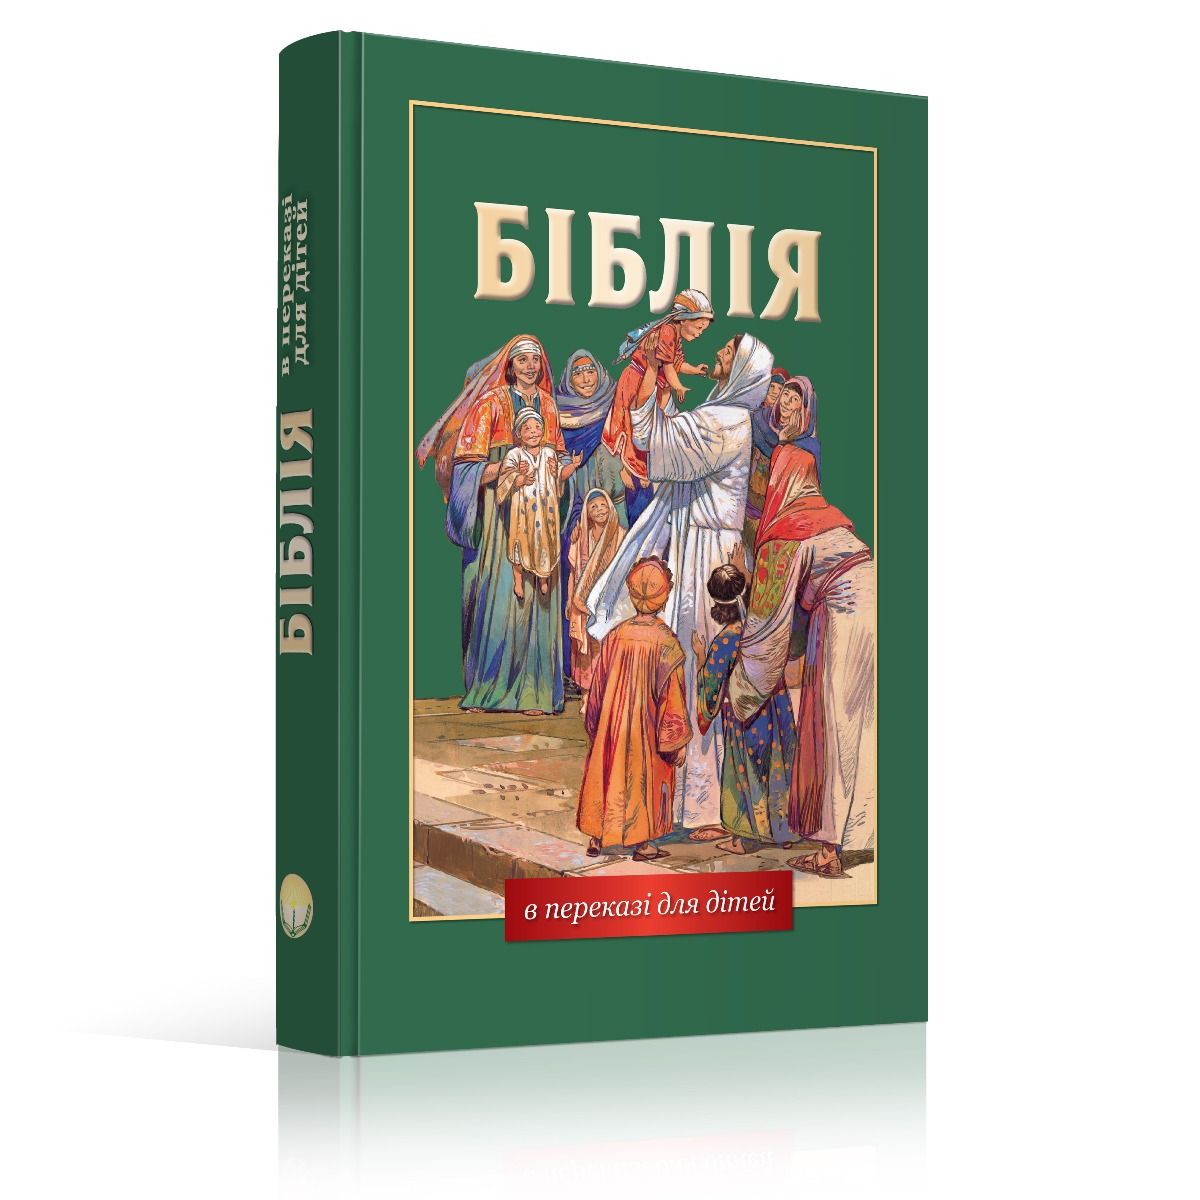 OnlyByGrace Ukranian The childrens bible